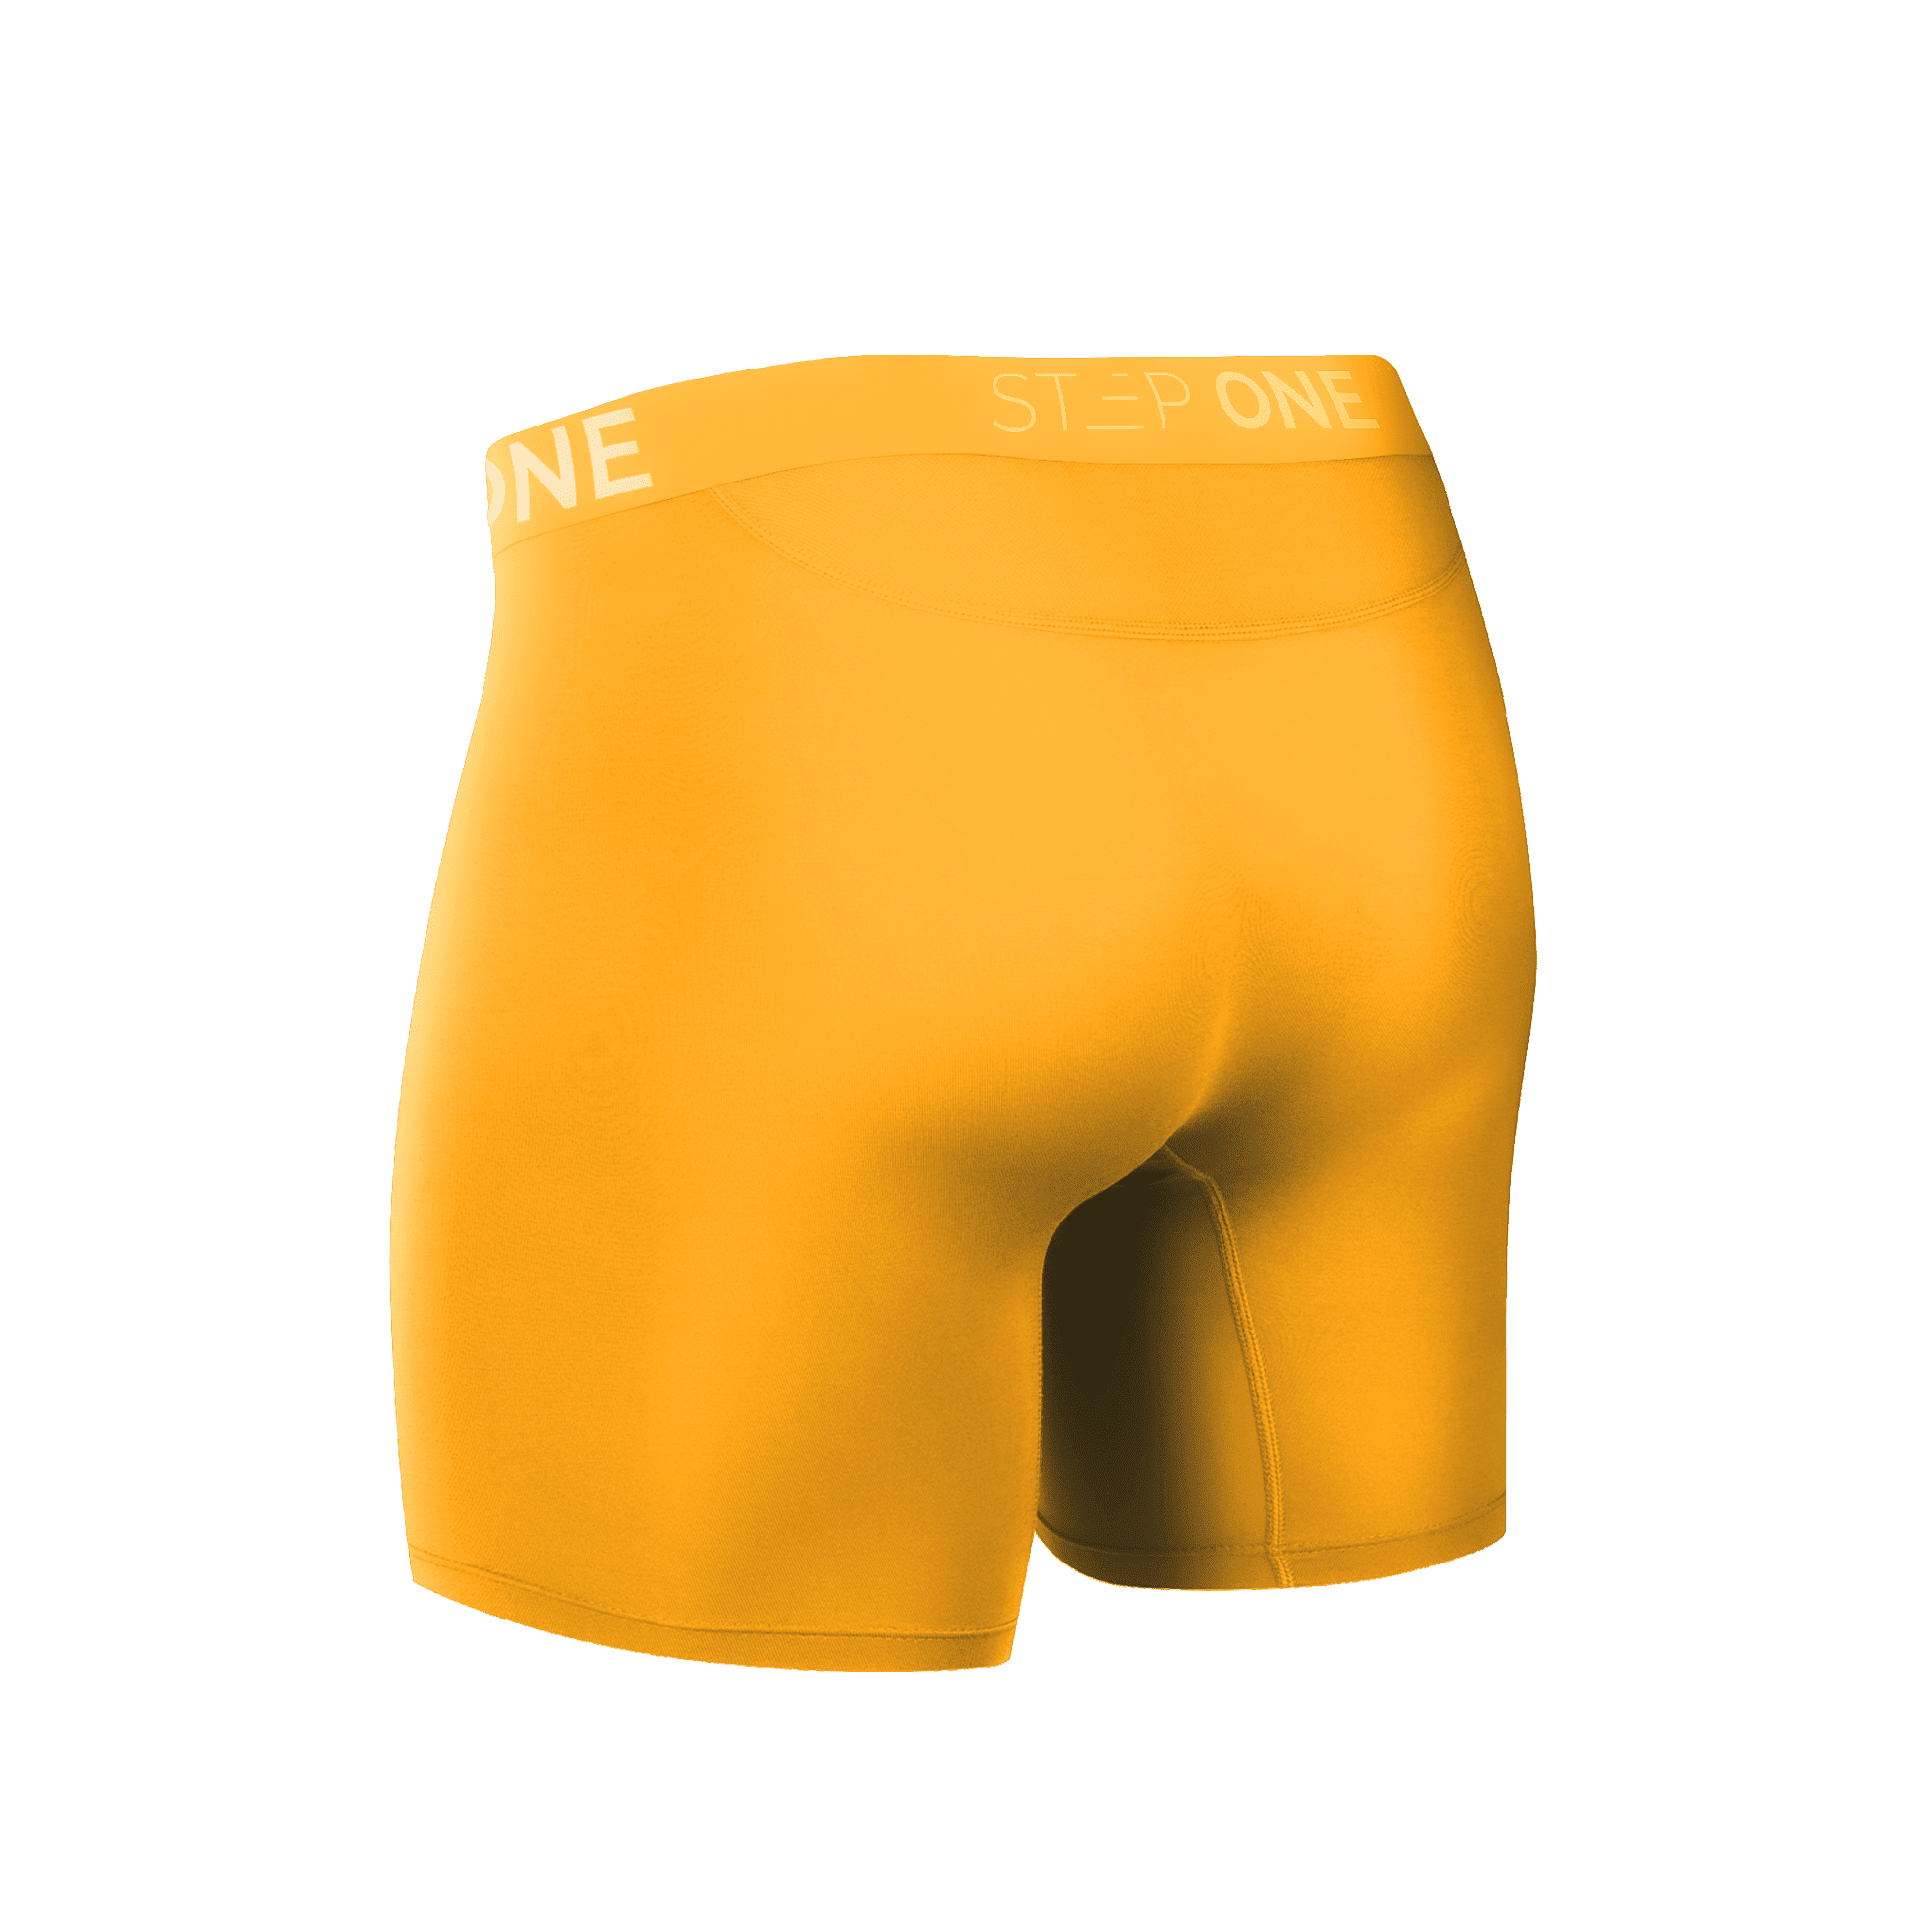 Boxer Brief - Egg Yolks | Step One Men's Underwear